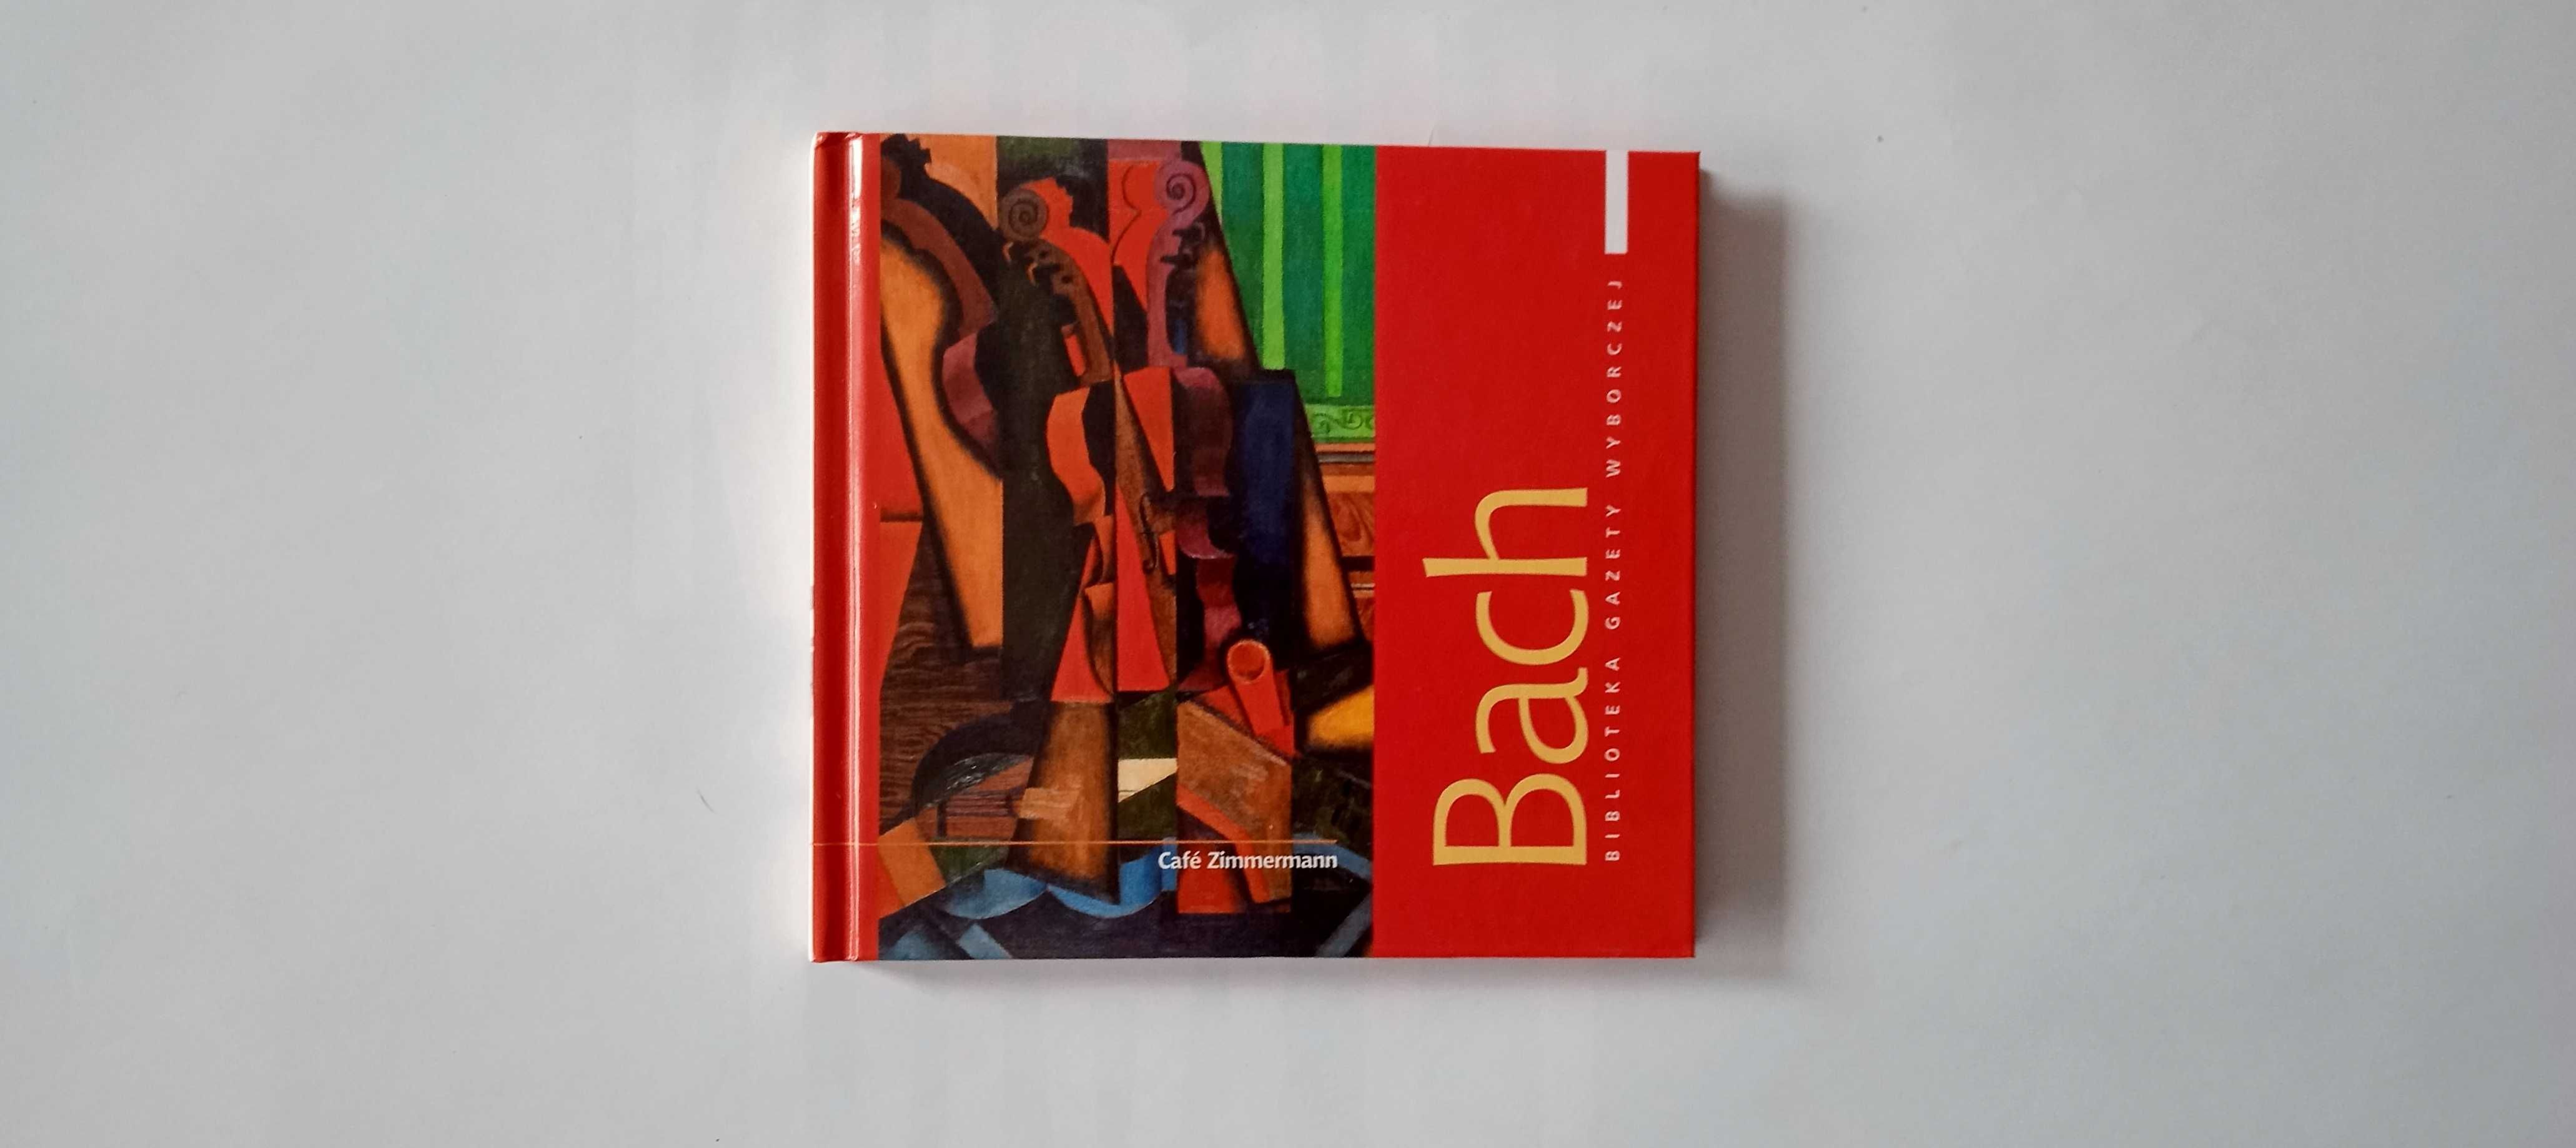 CD "Bach - Wielcy Kompozytorzy" Biblioteka GW